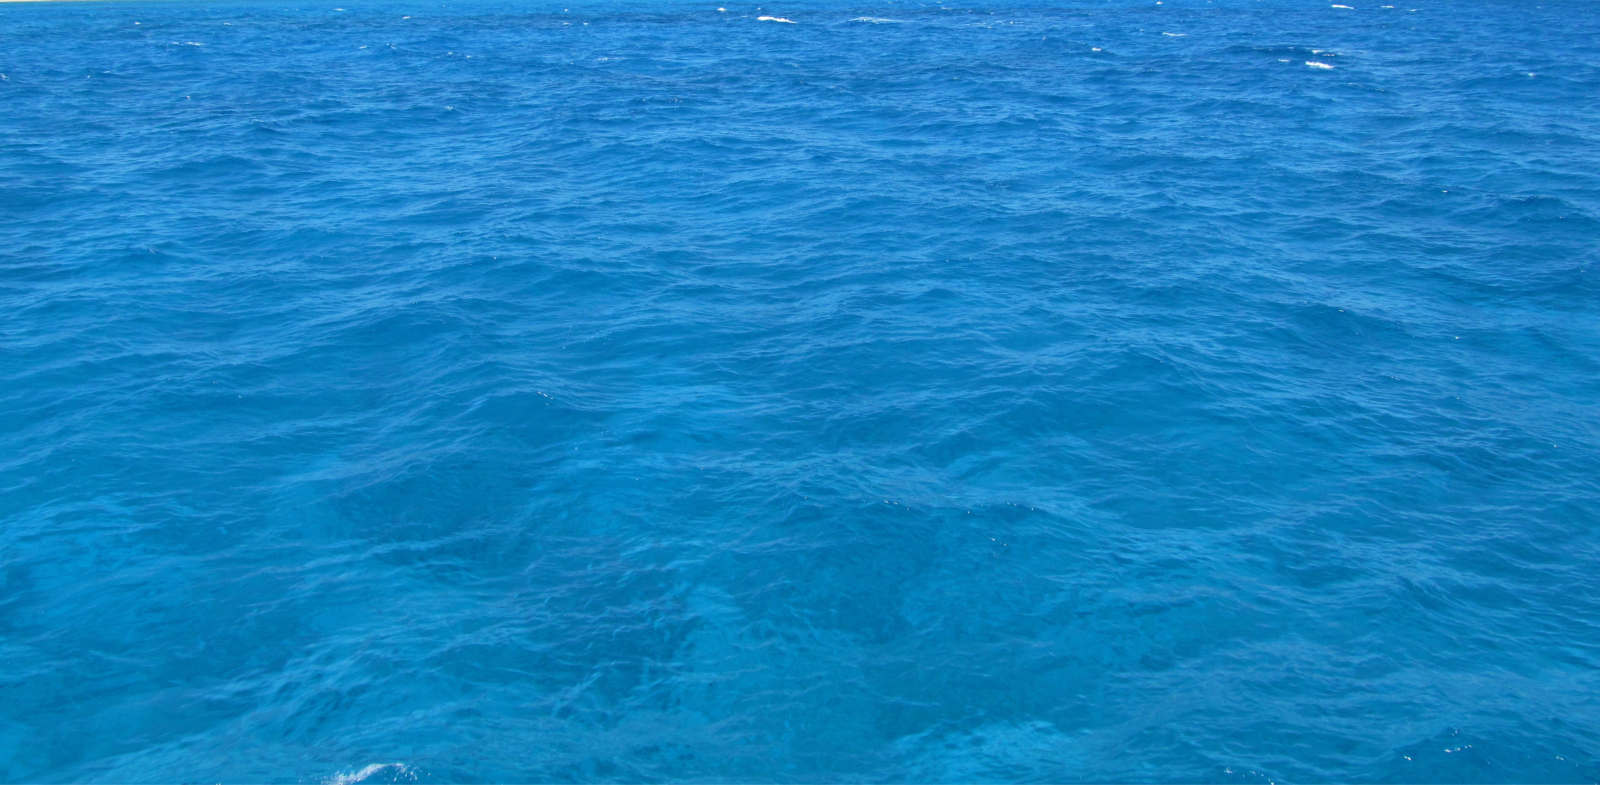 Meer blau Kreta Sea blue Crete